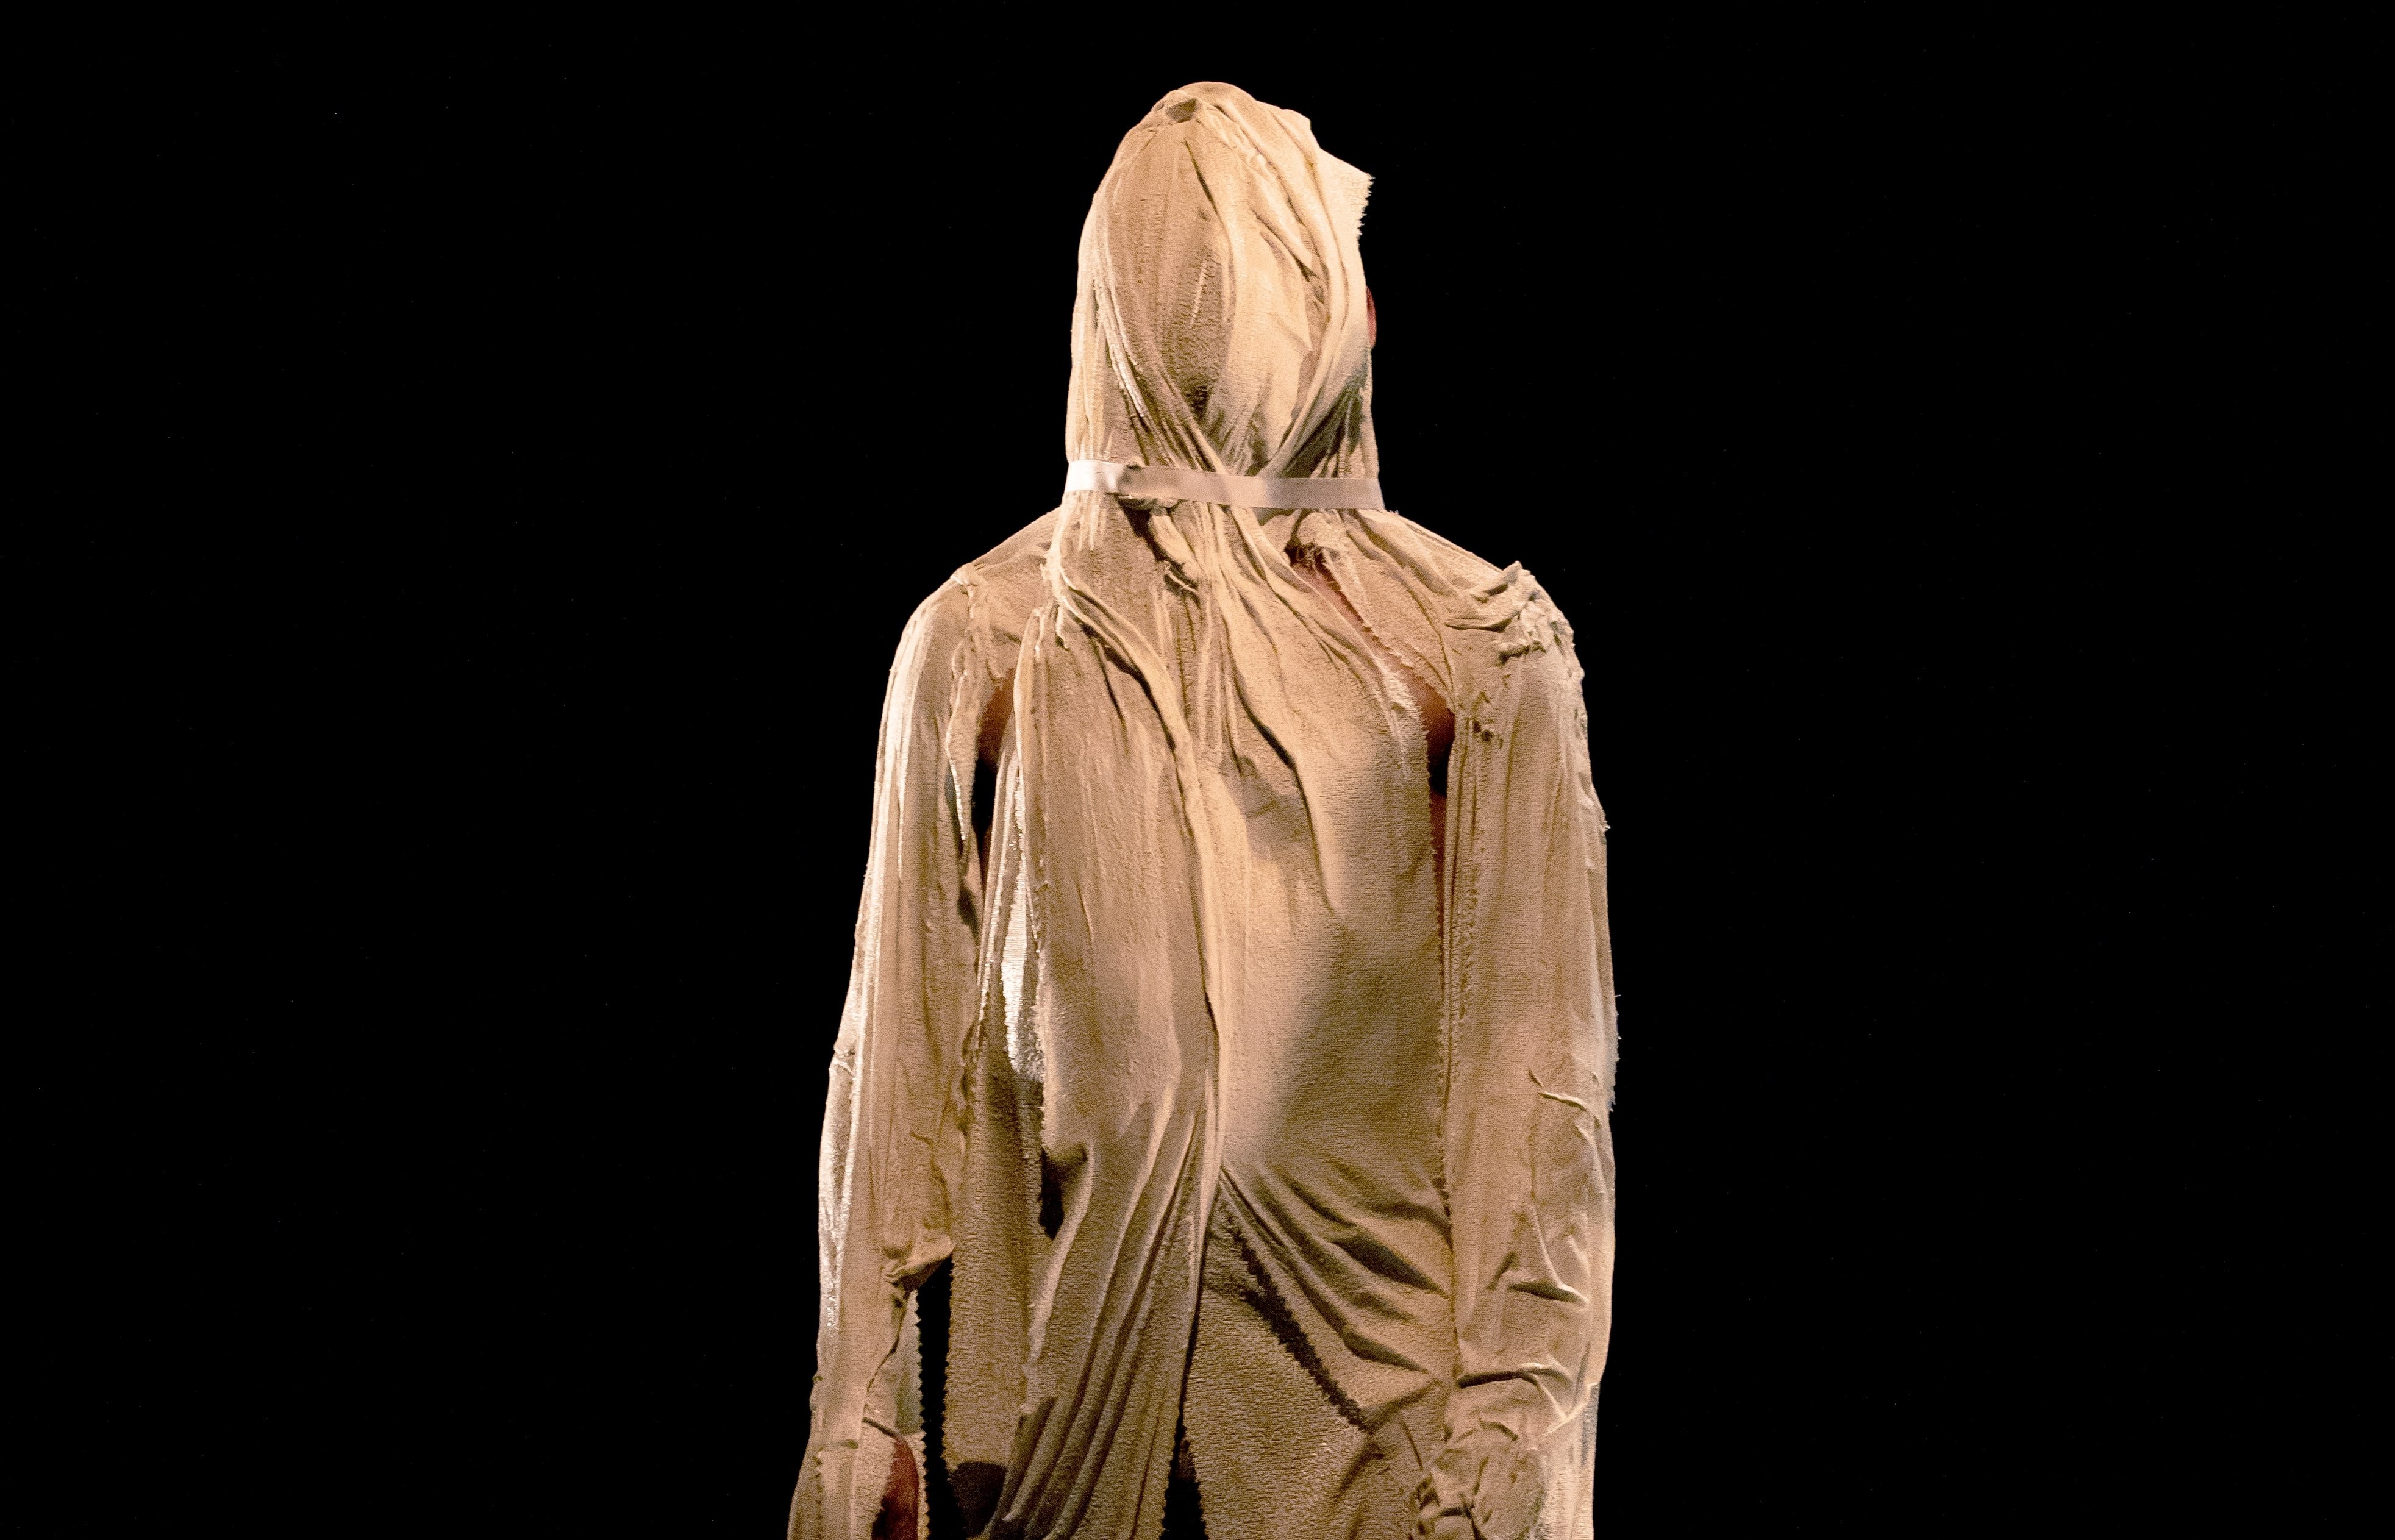 Der Körper und Kopf einer stehenden Person ist komplett mit einem eng anliegenden, falten werfenden Stoff überzogen. Er sieht dadurch aus wie eine Marmor Statue.